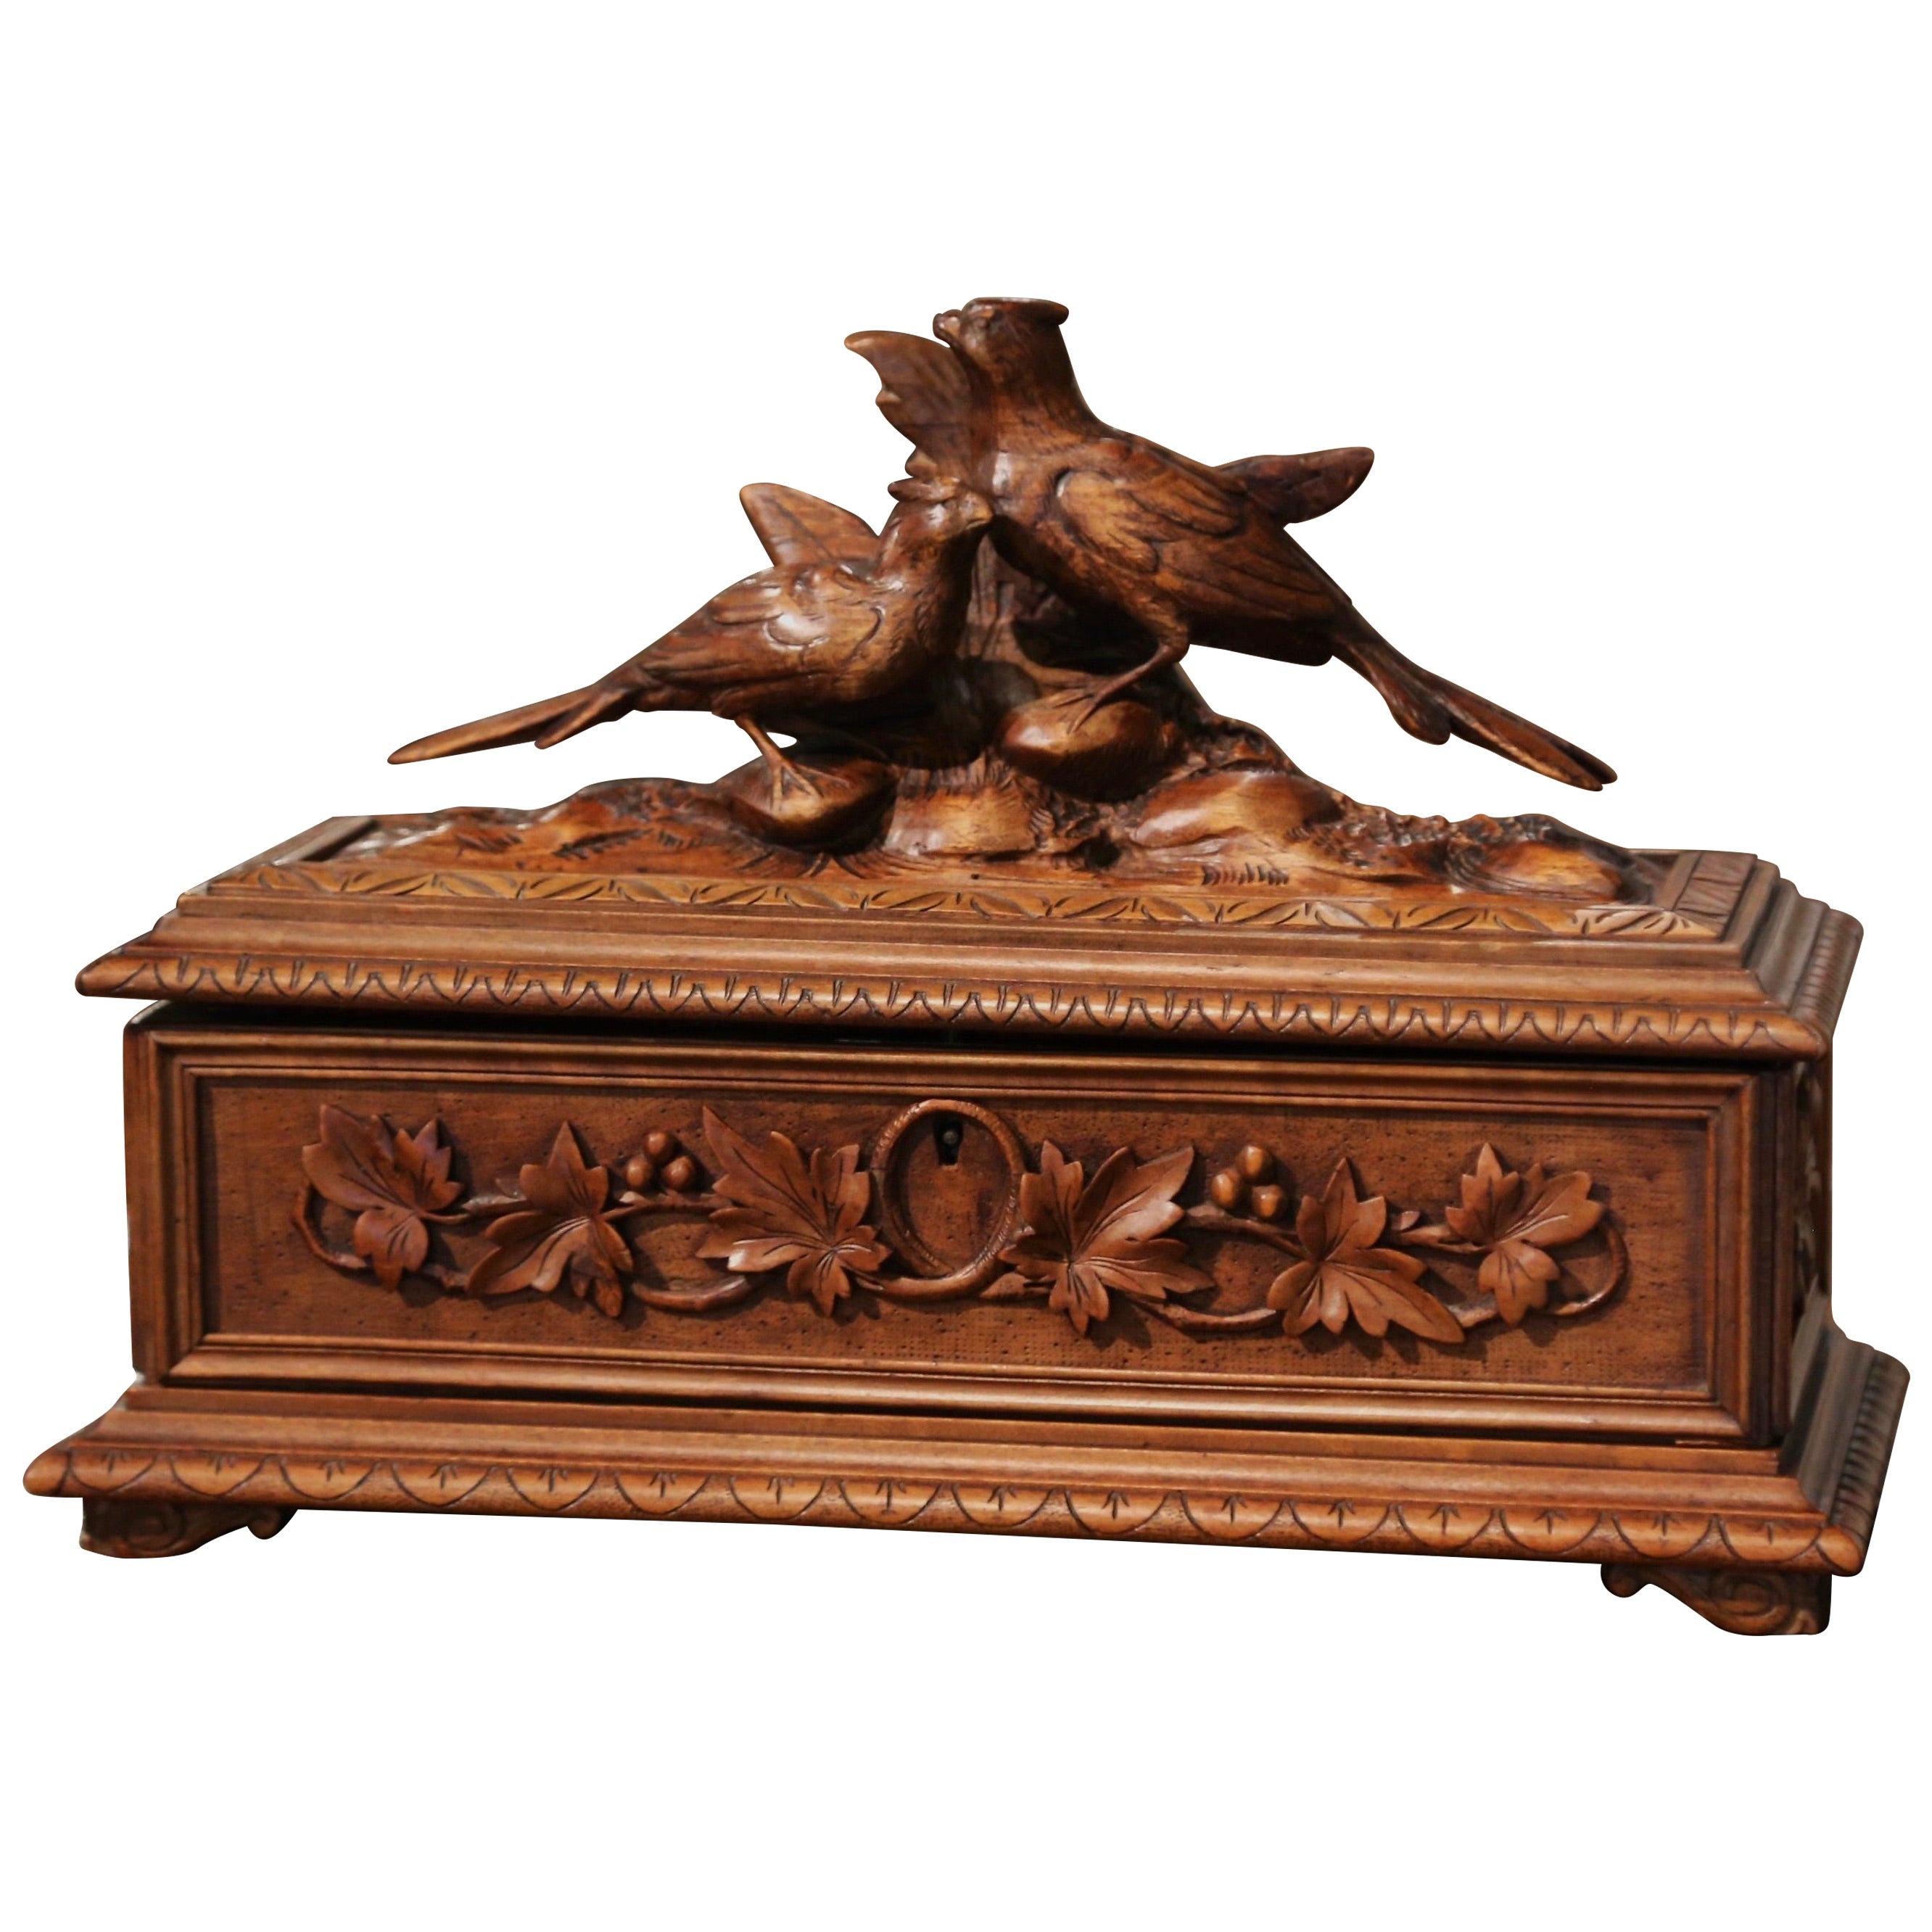 19th Century French Black Forest Carved Walnut Jewelry Box with Bird Motifs